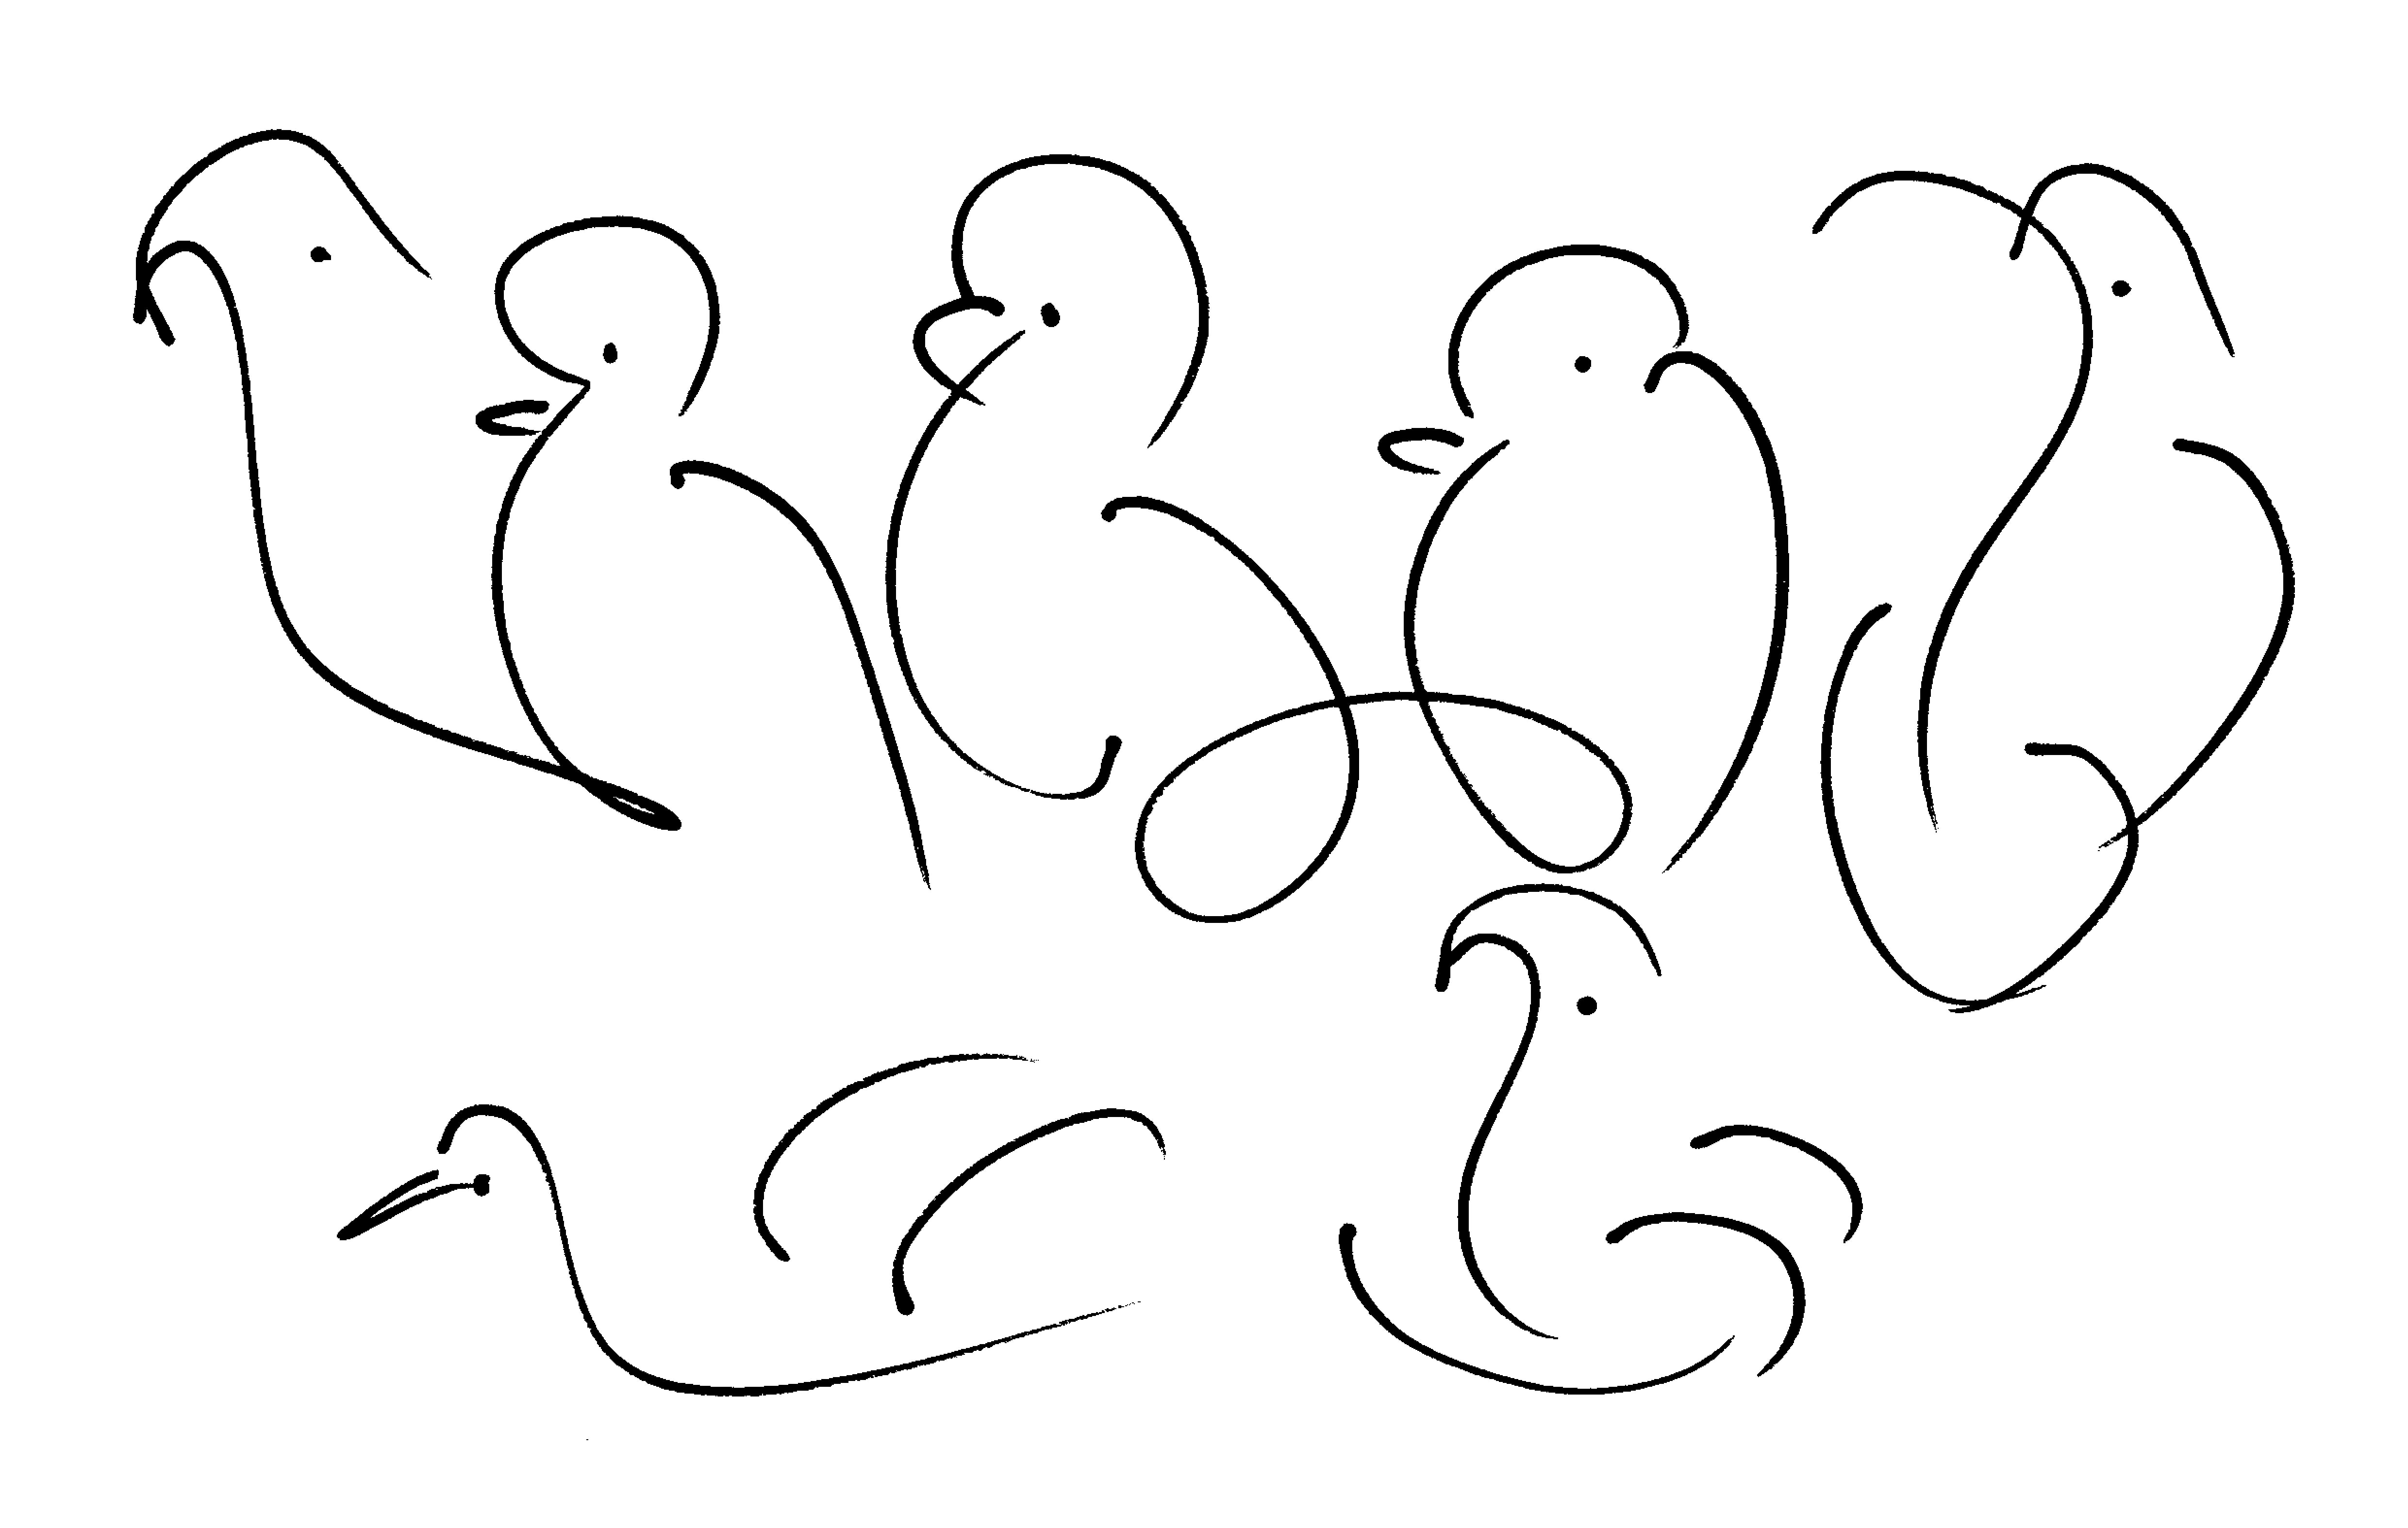 bird-drawing-by-sri-chinmoy-undated-397